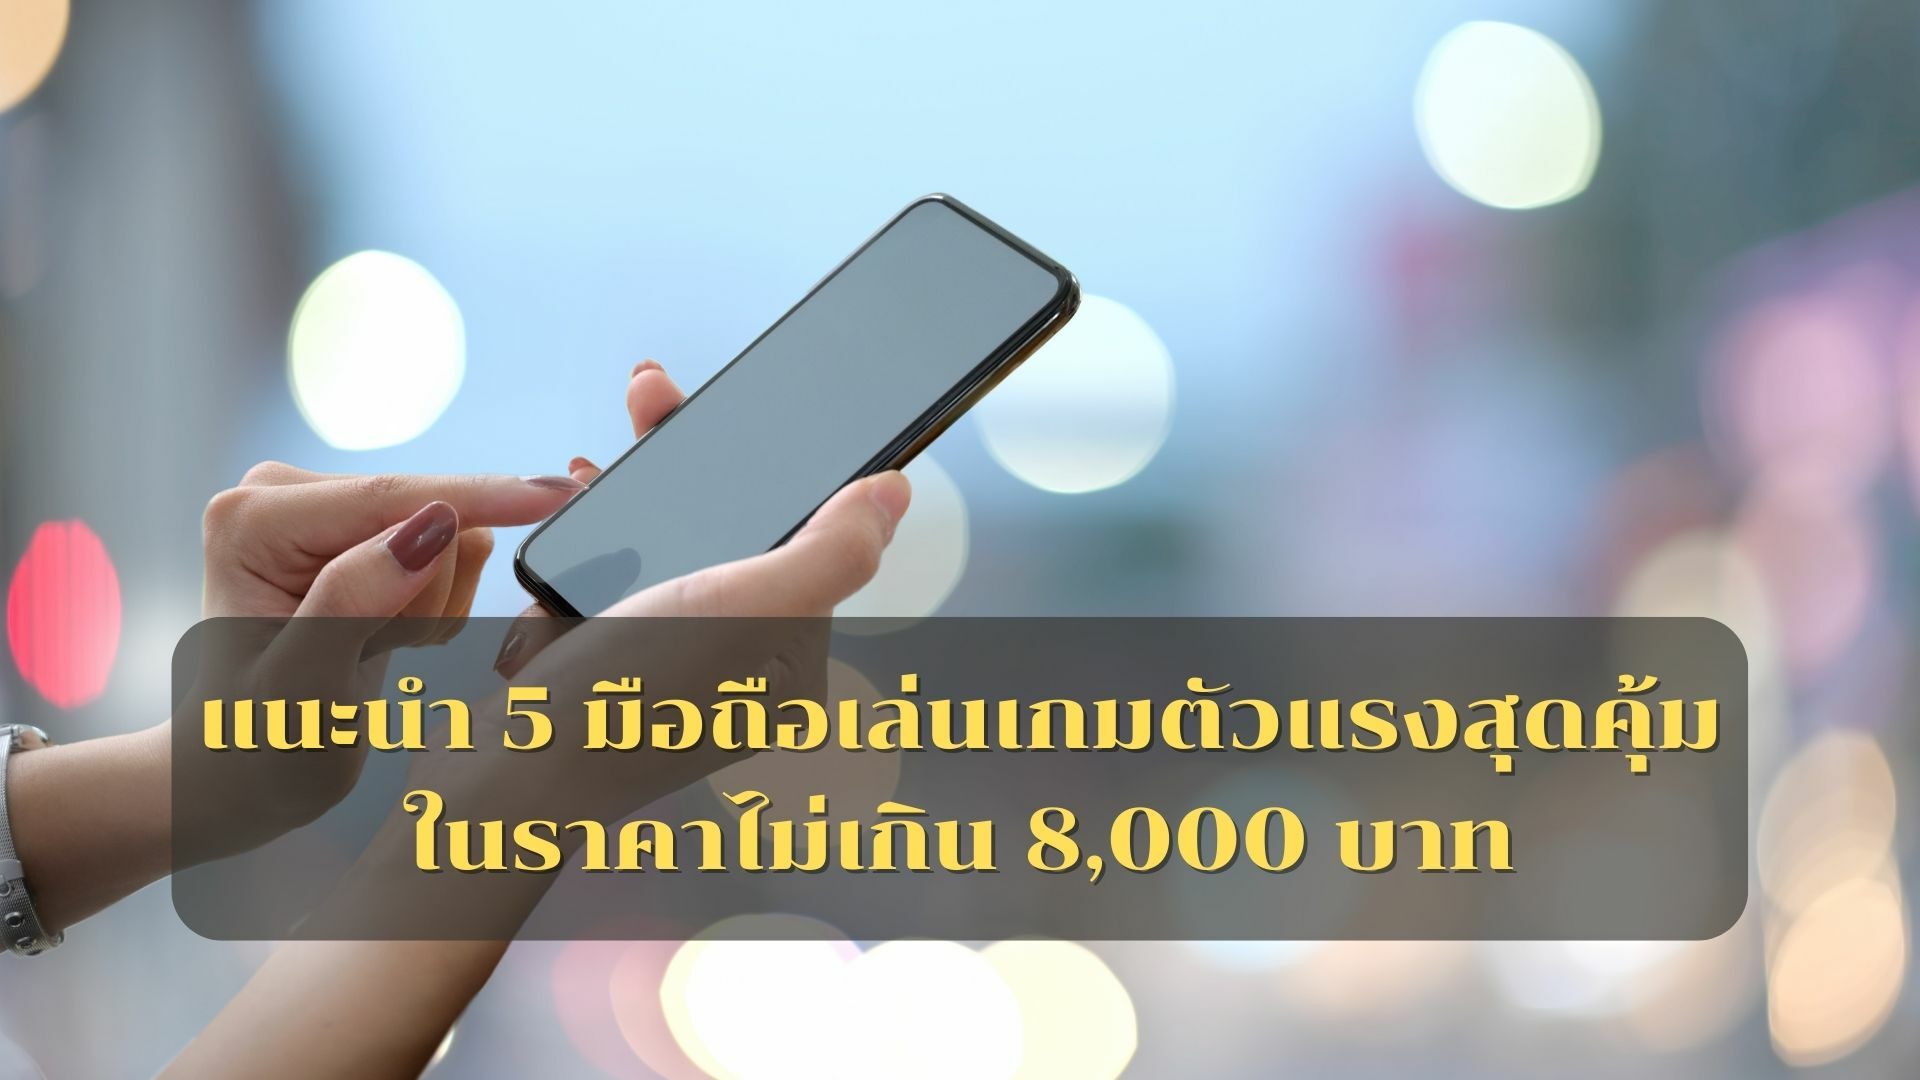 แนะนำ 5 มือถือเล่นเกมตัวแรงสุดคุ้ม ในราคาไม่เกิน 8,000 บาท | Thaiger ข่าวไทย